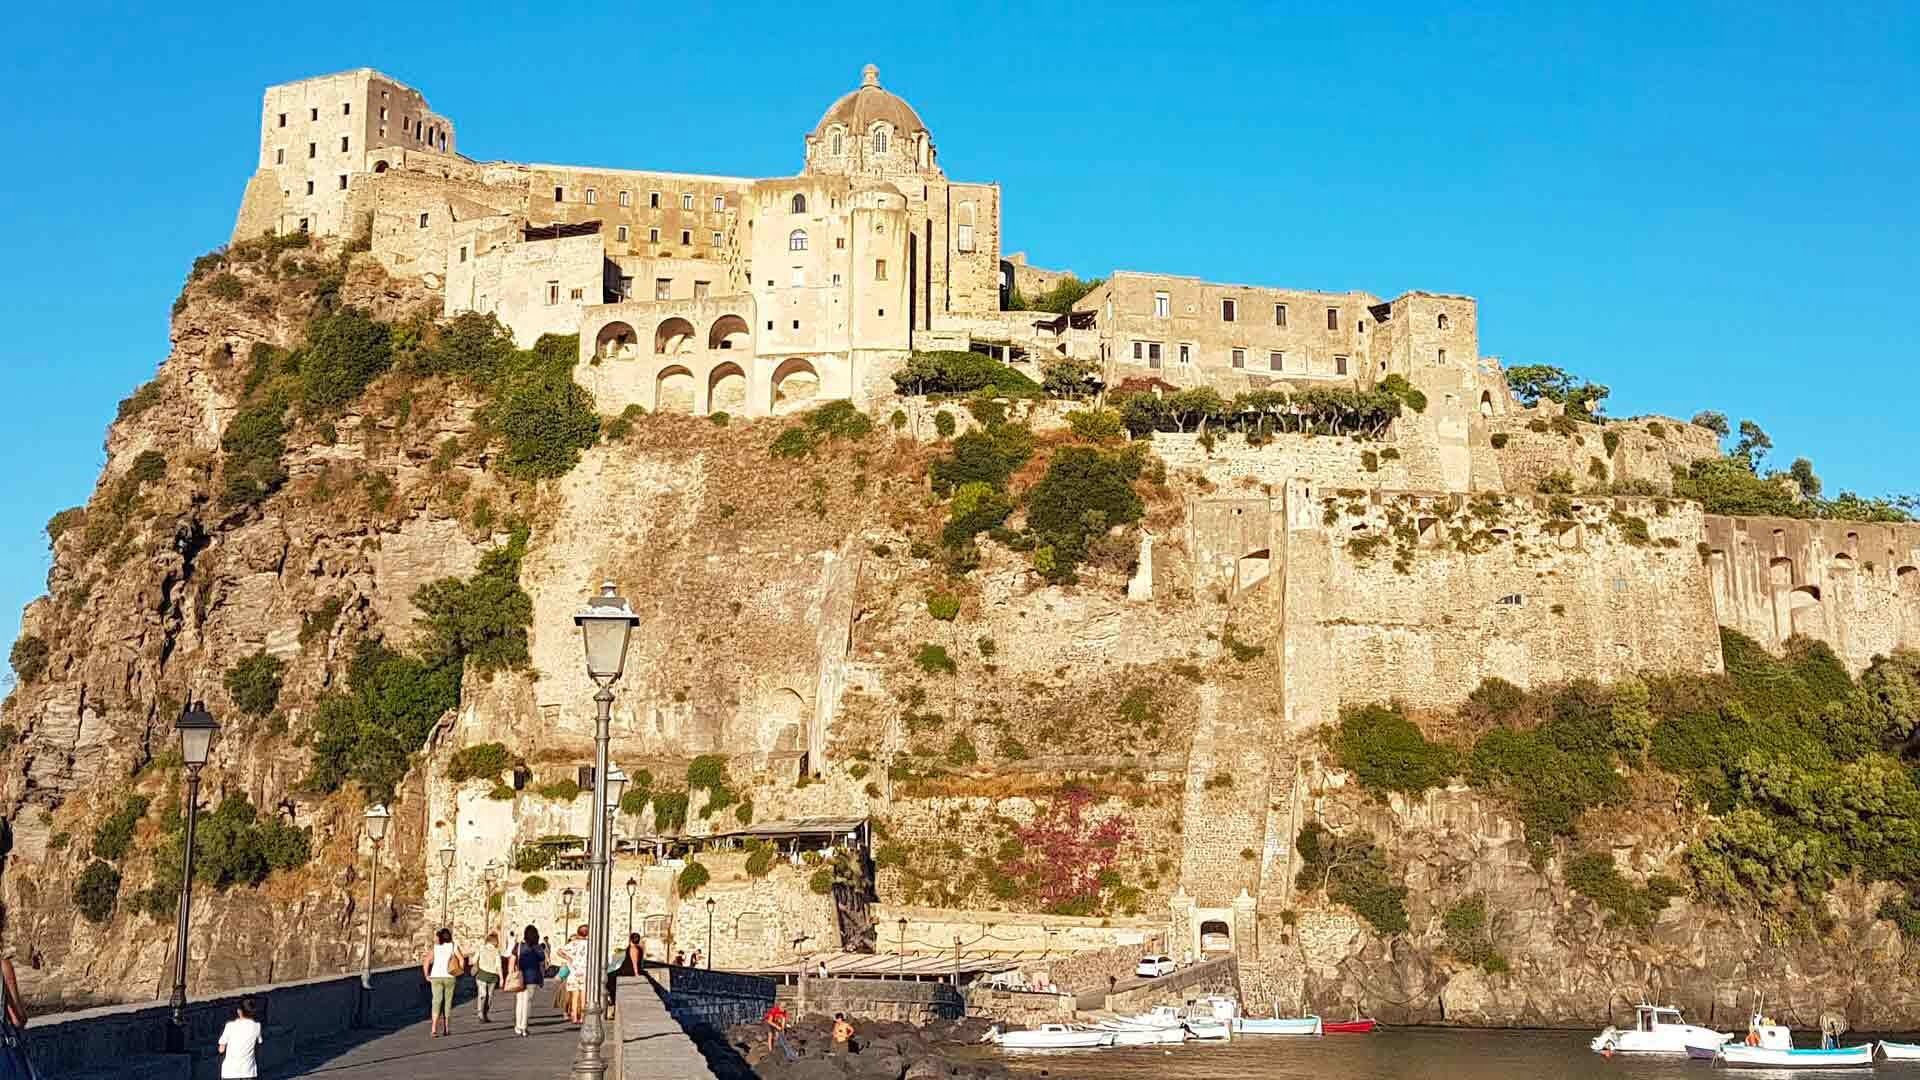 Visita guidata al Castello Aragonese di Ischia con transfer incluso